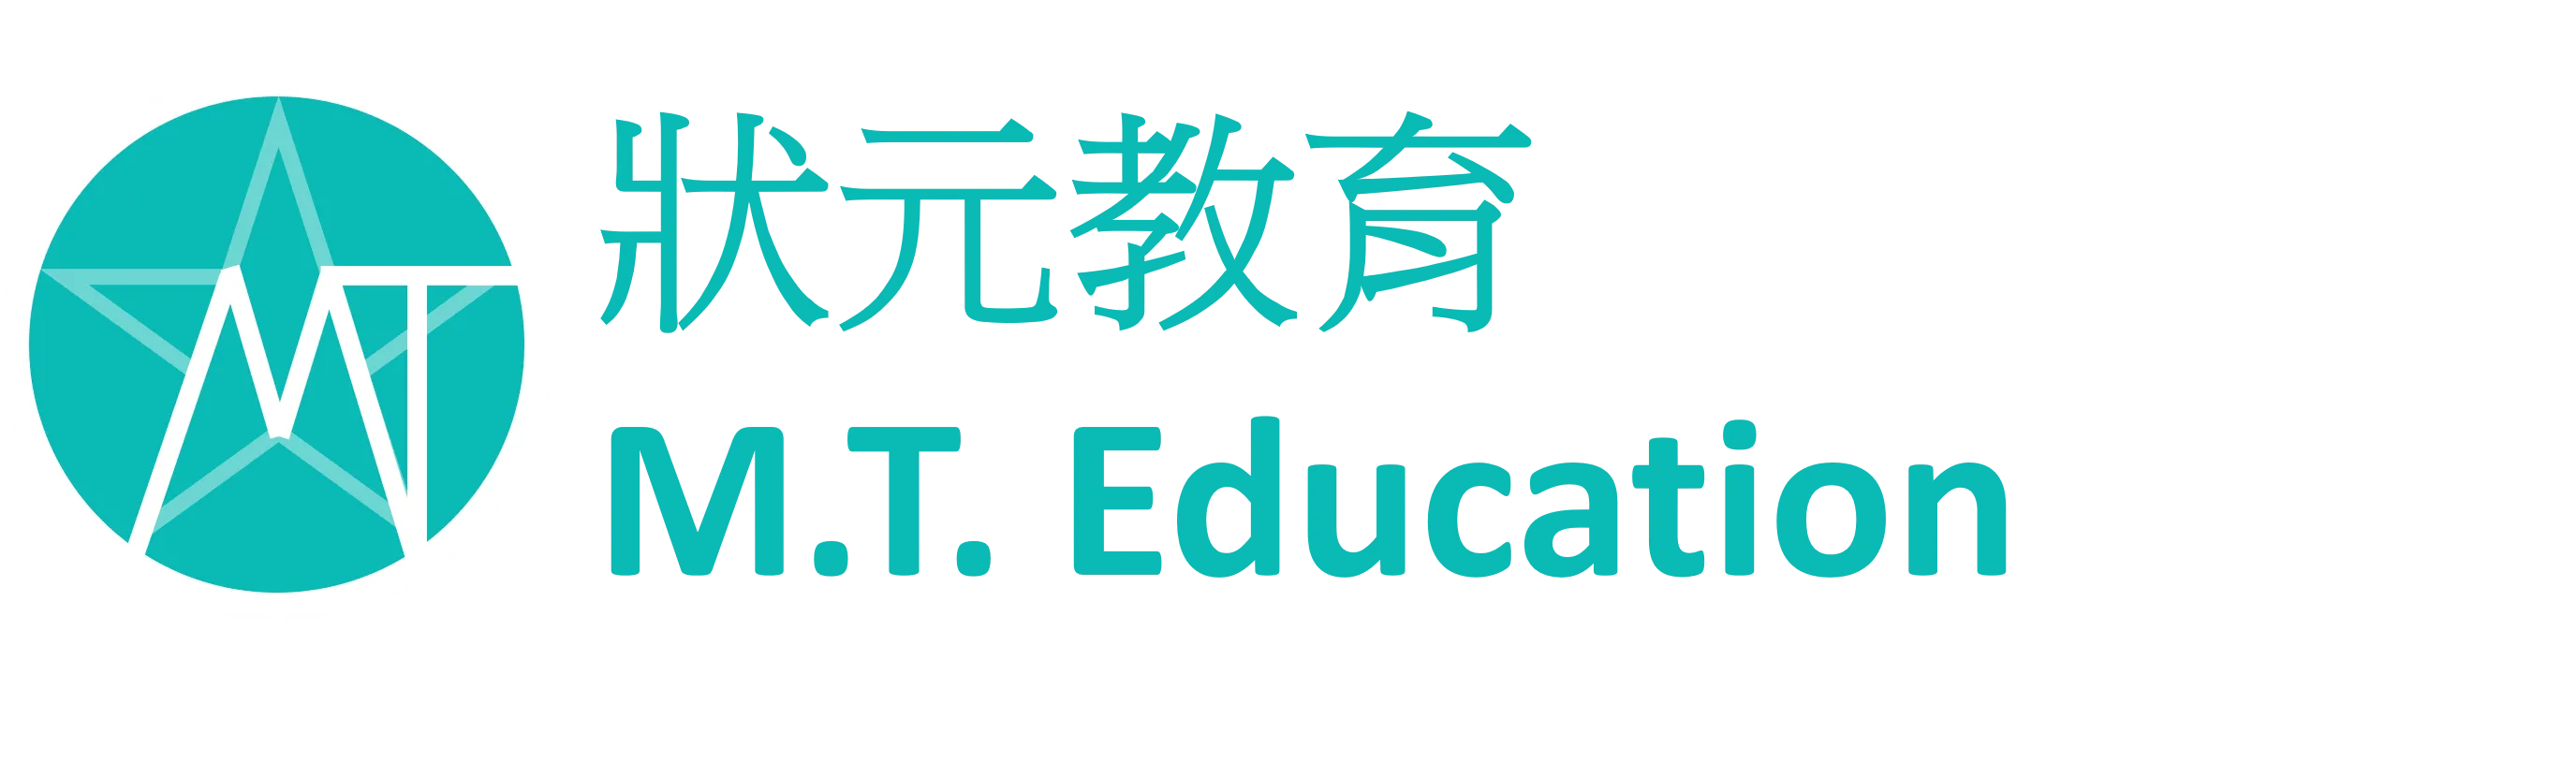  M.T. Education